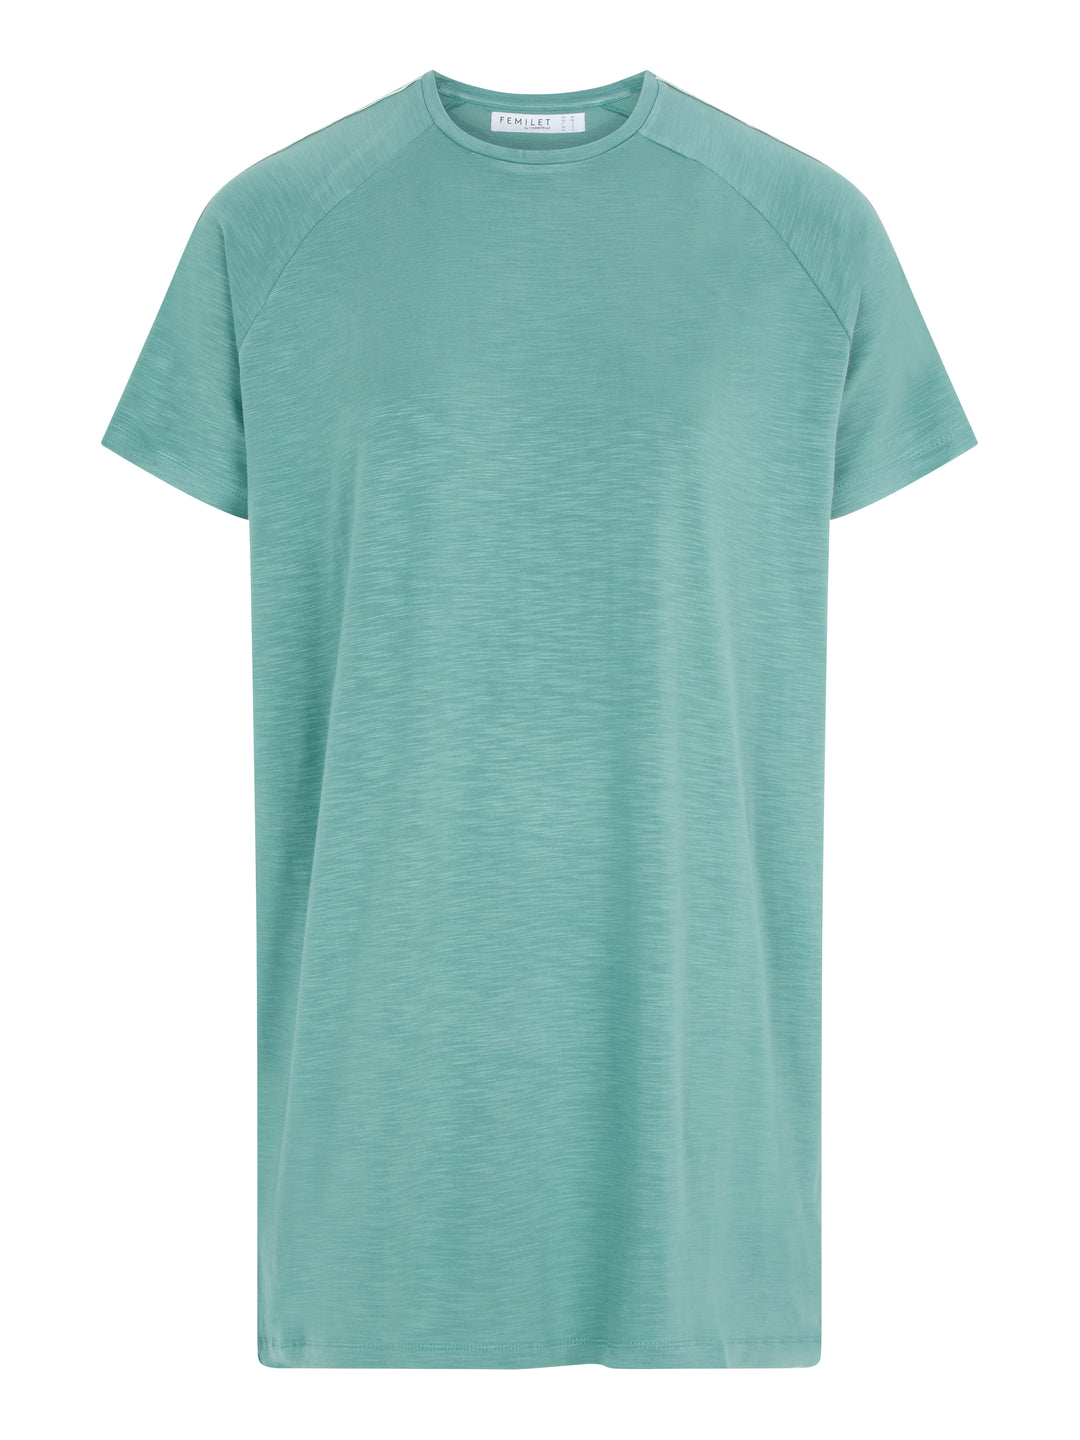 Femilet - Mabel Big Shirt Long Sleeves Trellis Green